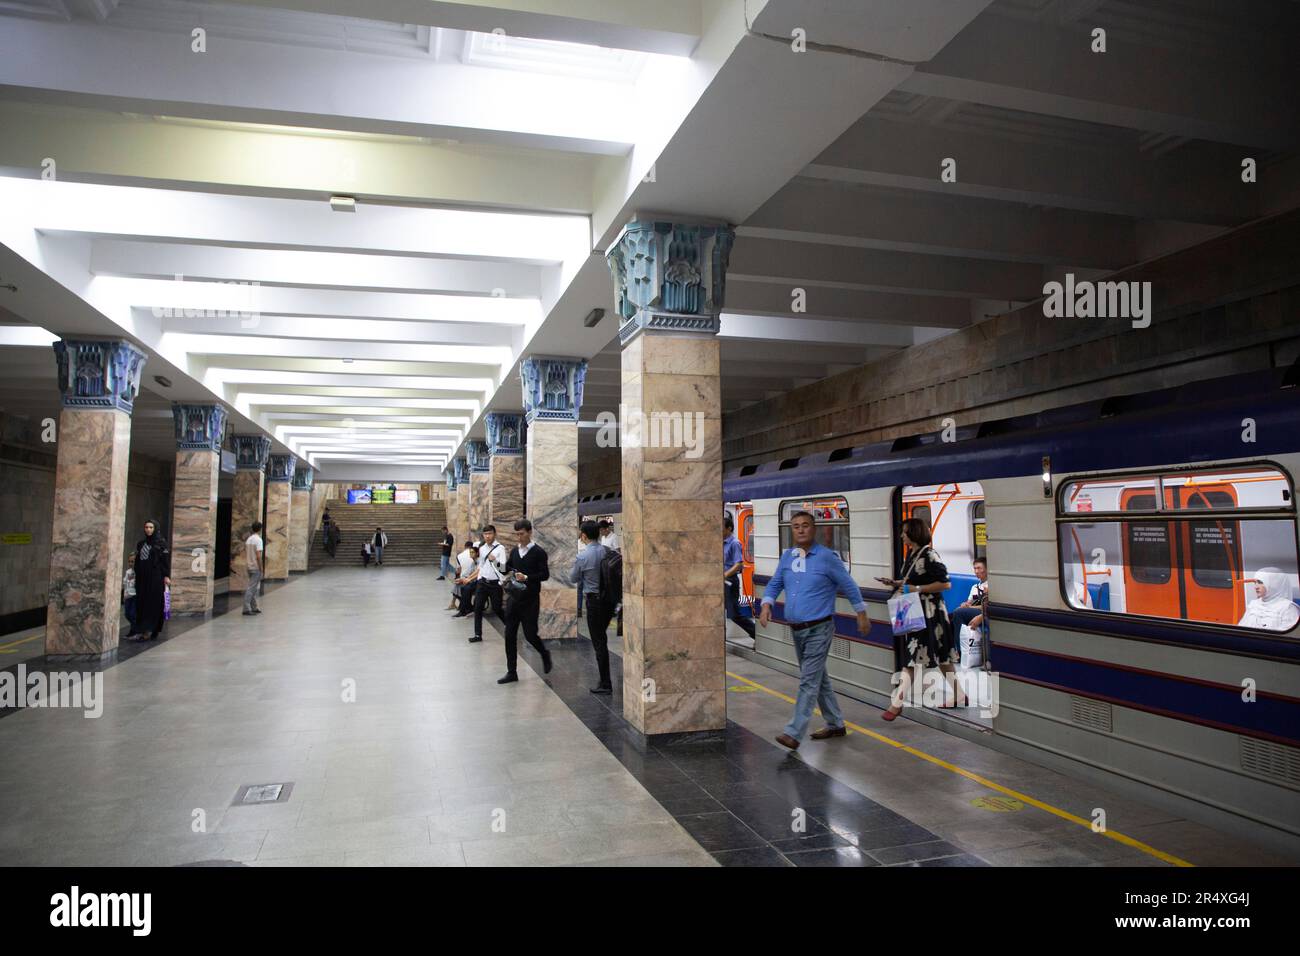 Station Toshkent pour le métro de Tachkent en Ouzbékistan ; Tachkent, Ouzbékistan Banque D'Images